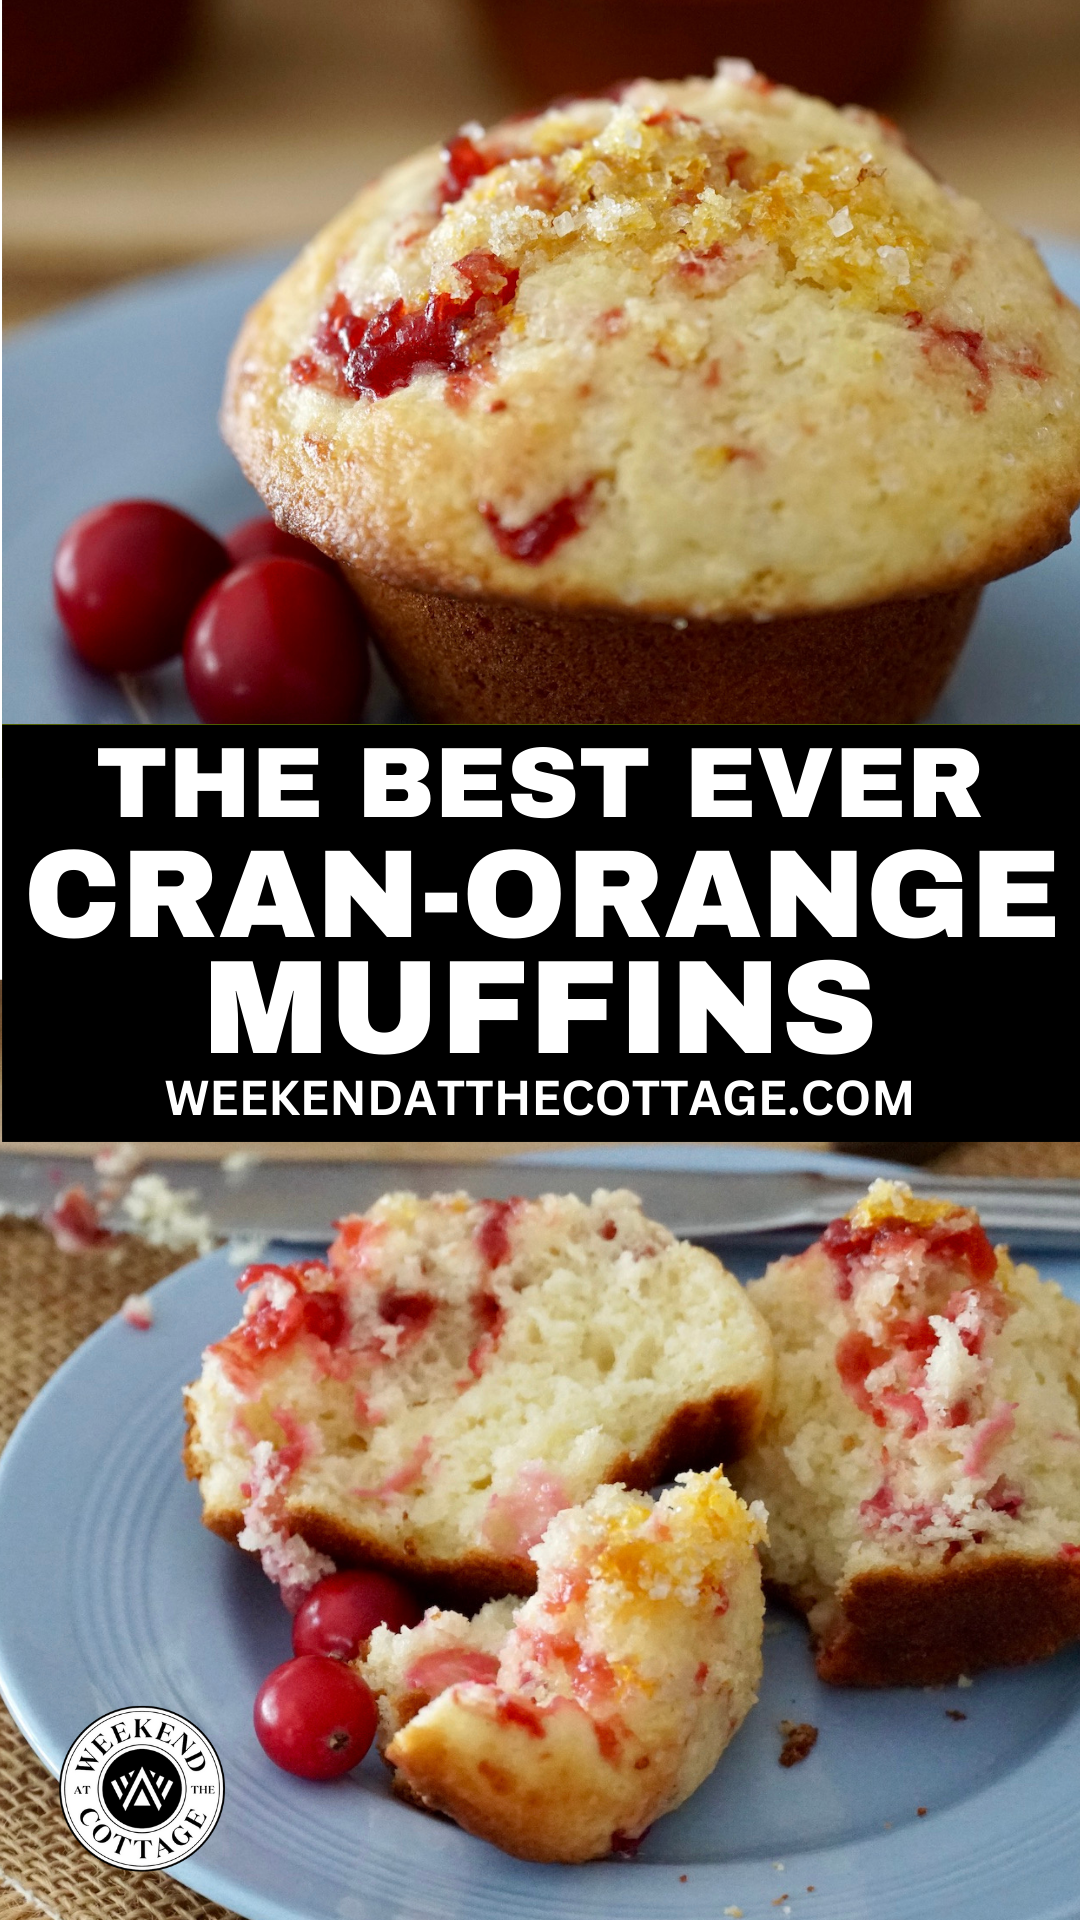 Cranberry-Orange Muffin Recipe